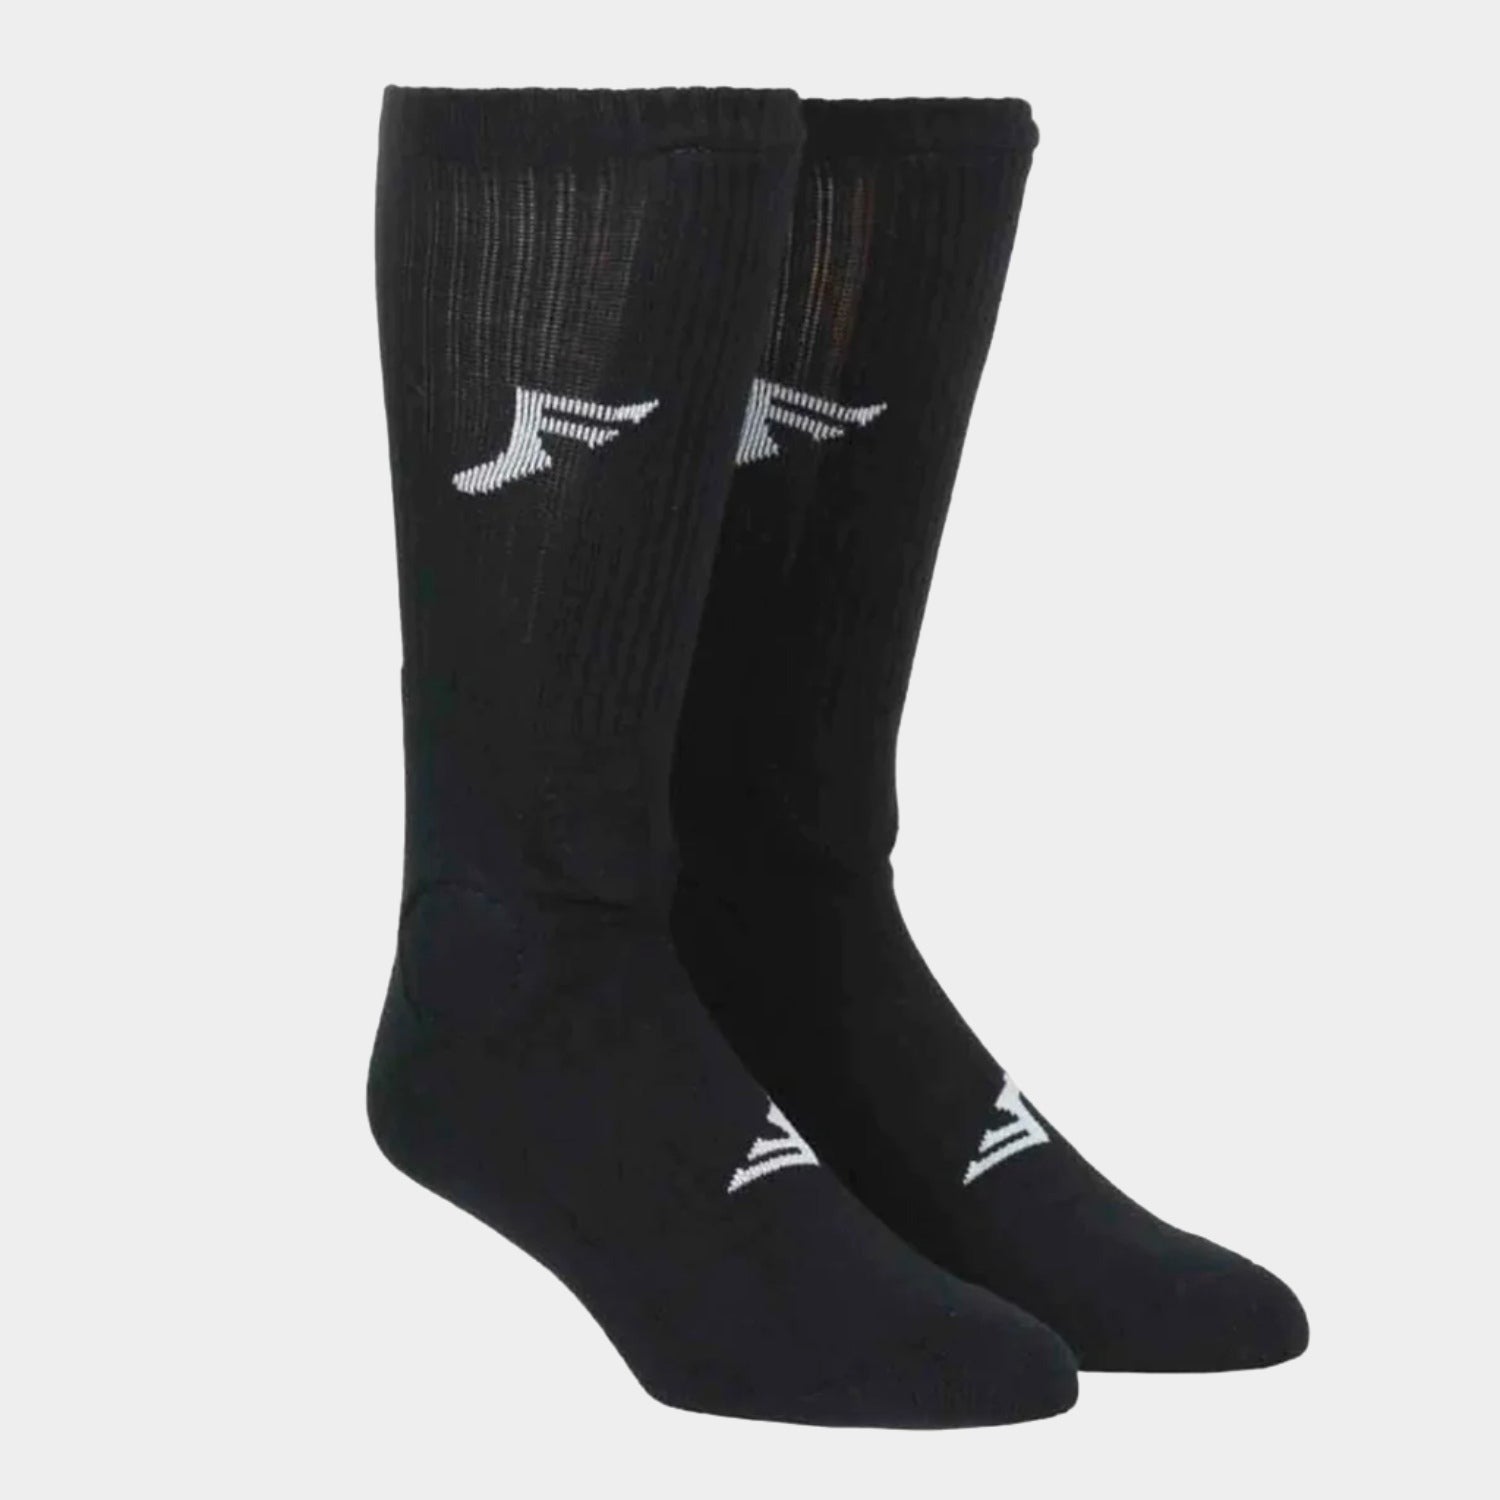 Footprint - Knee High Painkiller Shin Socks - Black - Prime Delux Store